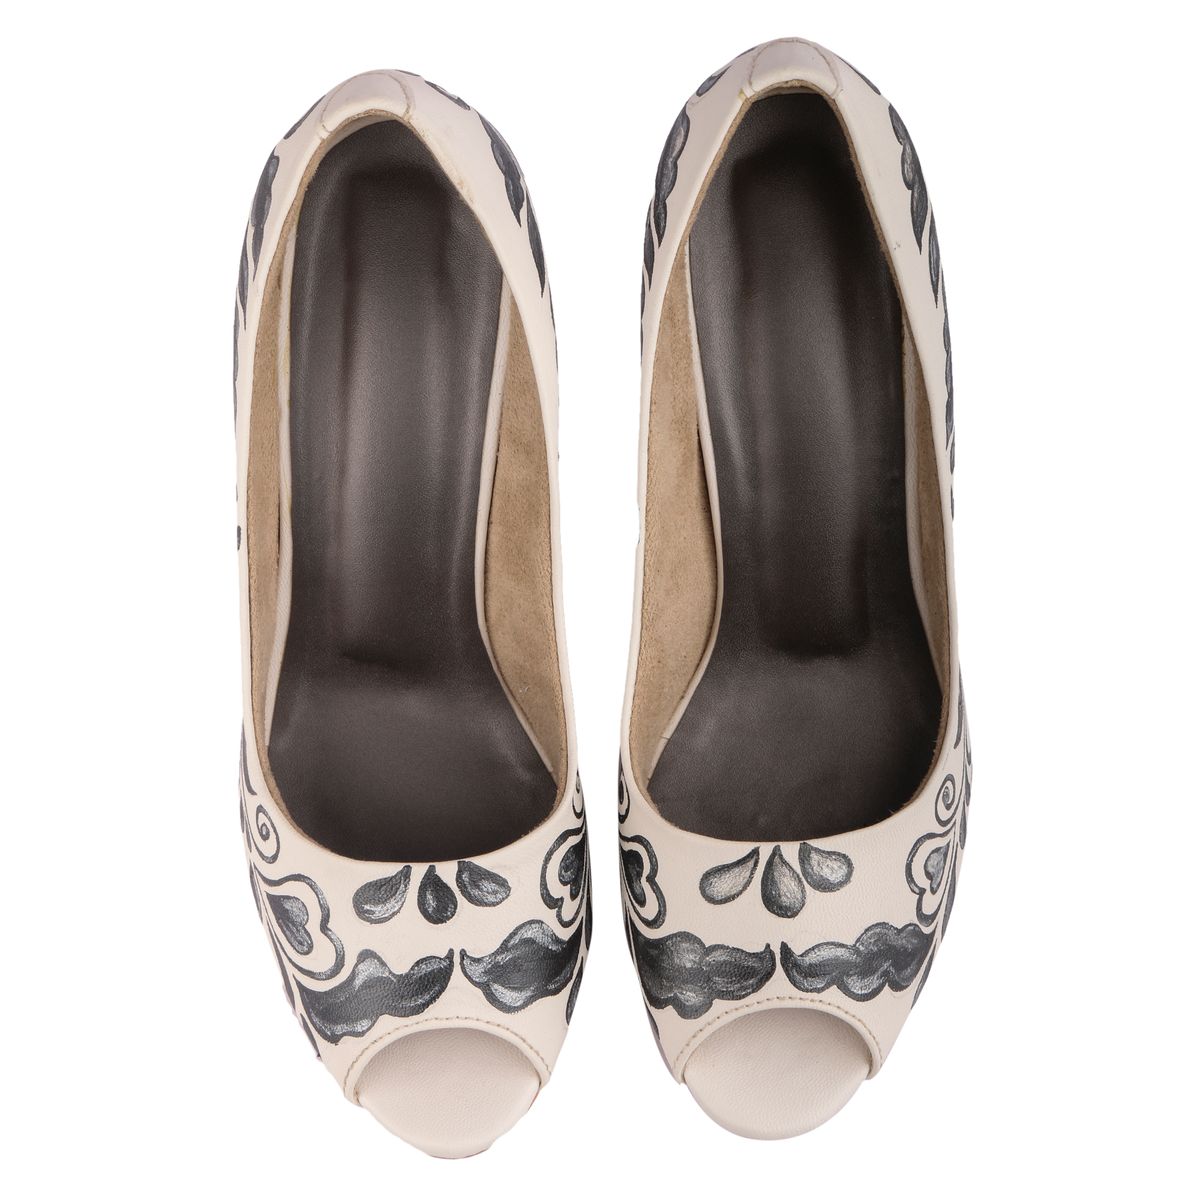 Buy Wearmates Pearl Black Allover Peeptoe Designer Heels Shoes at 20% ...